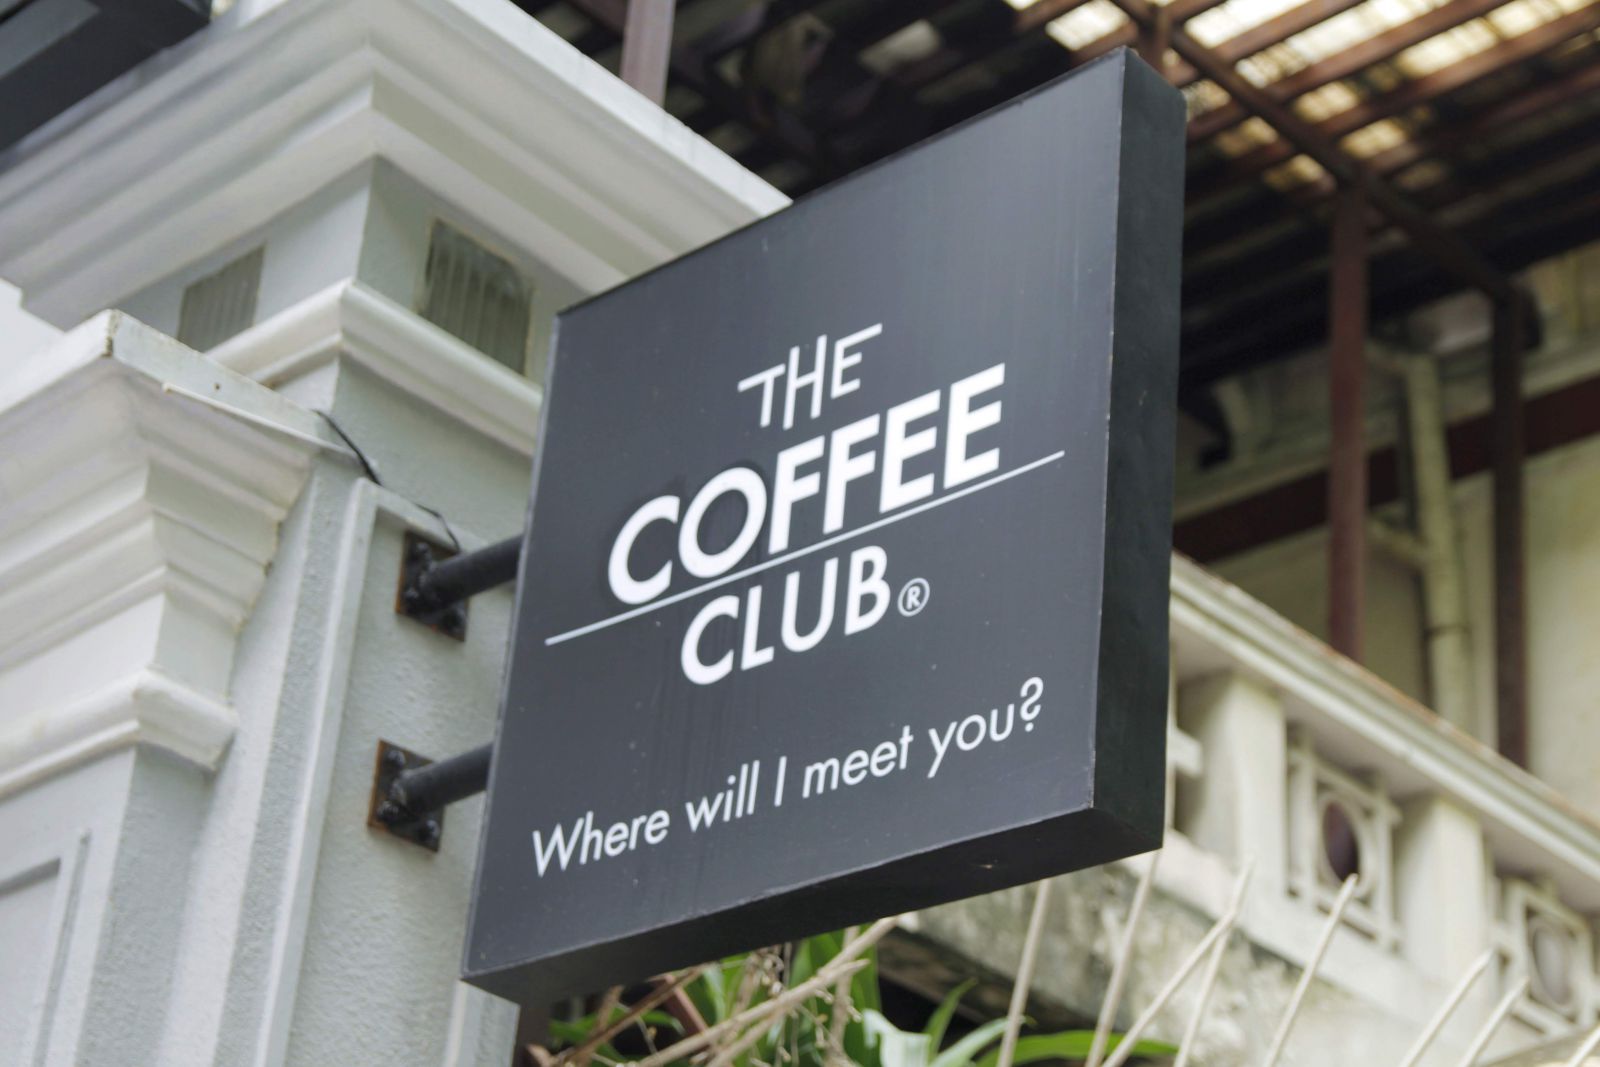 thương hiệu the coffee club tại quận 1 tphcm